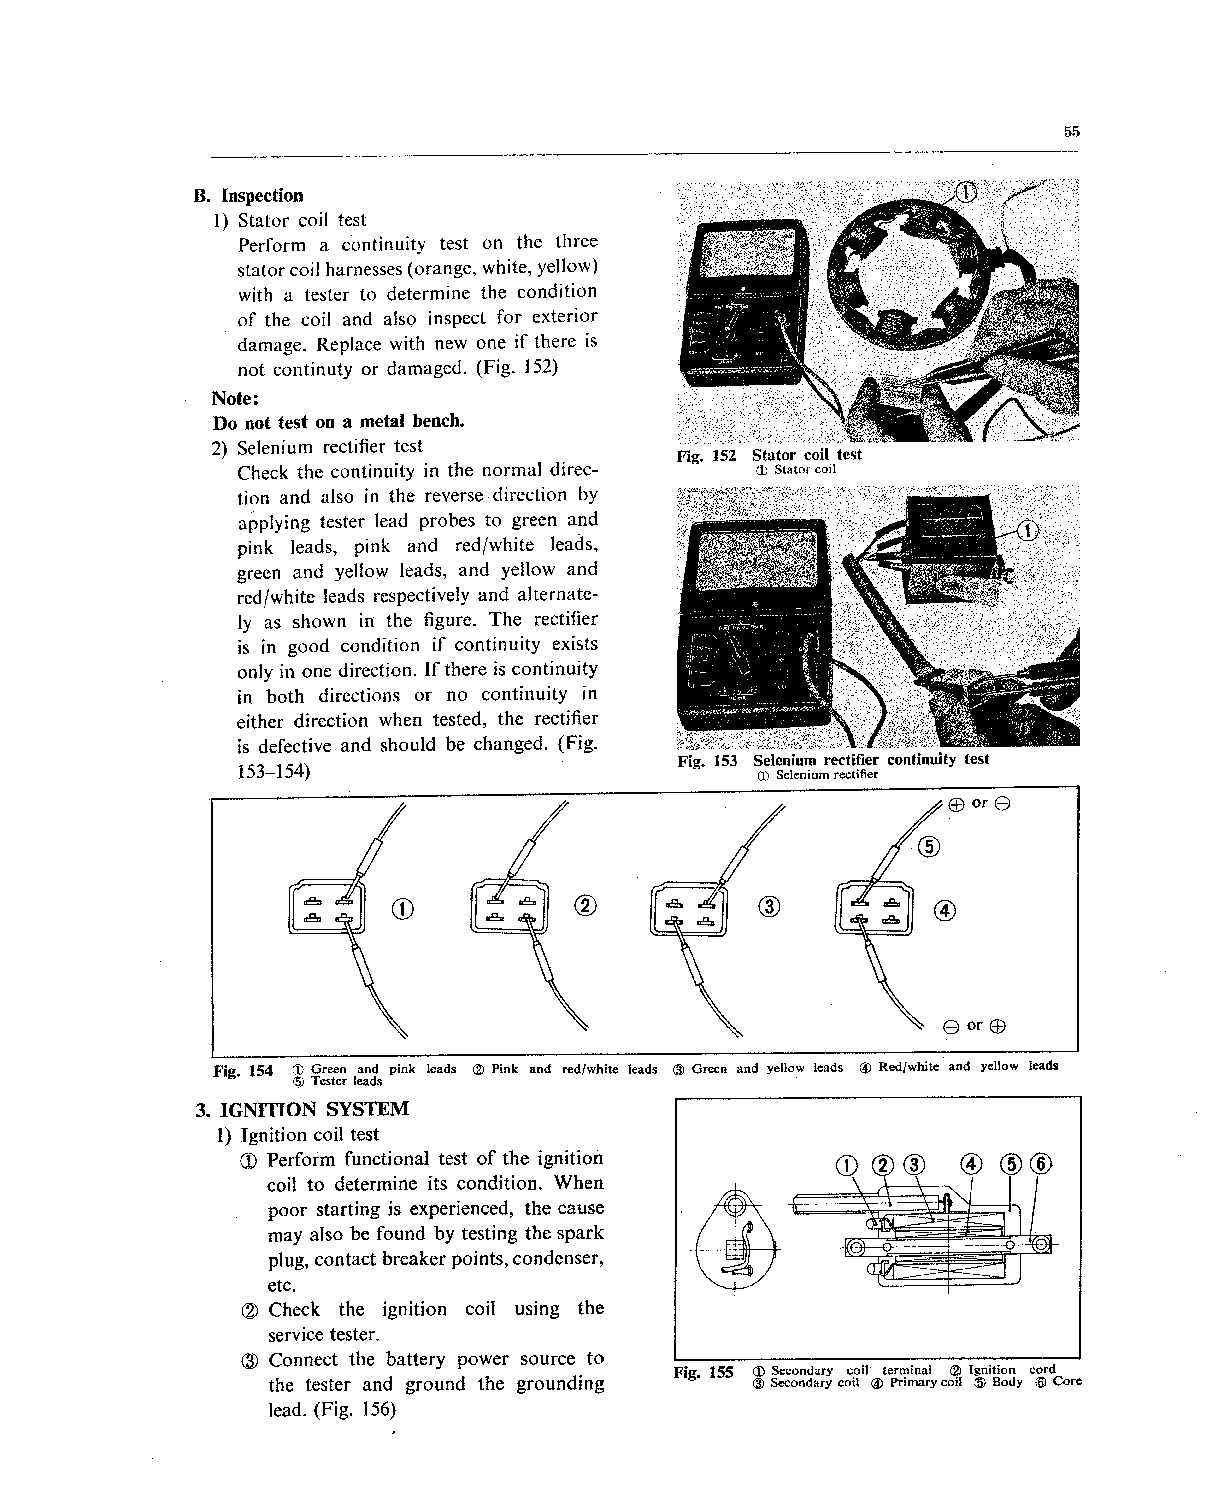 1971-1973 Honda SL125 Repair Service Workshop Manual